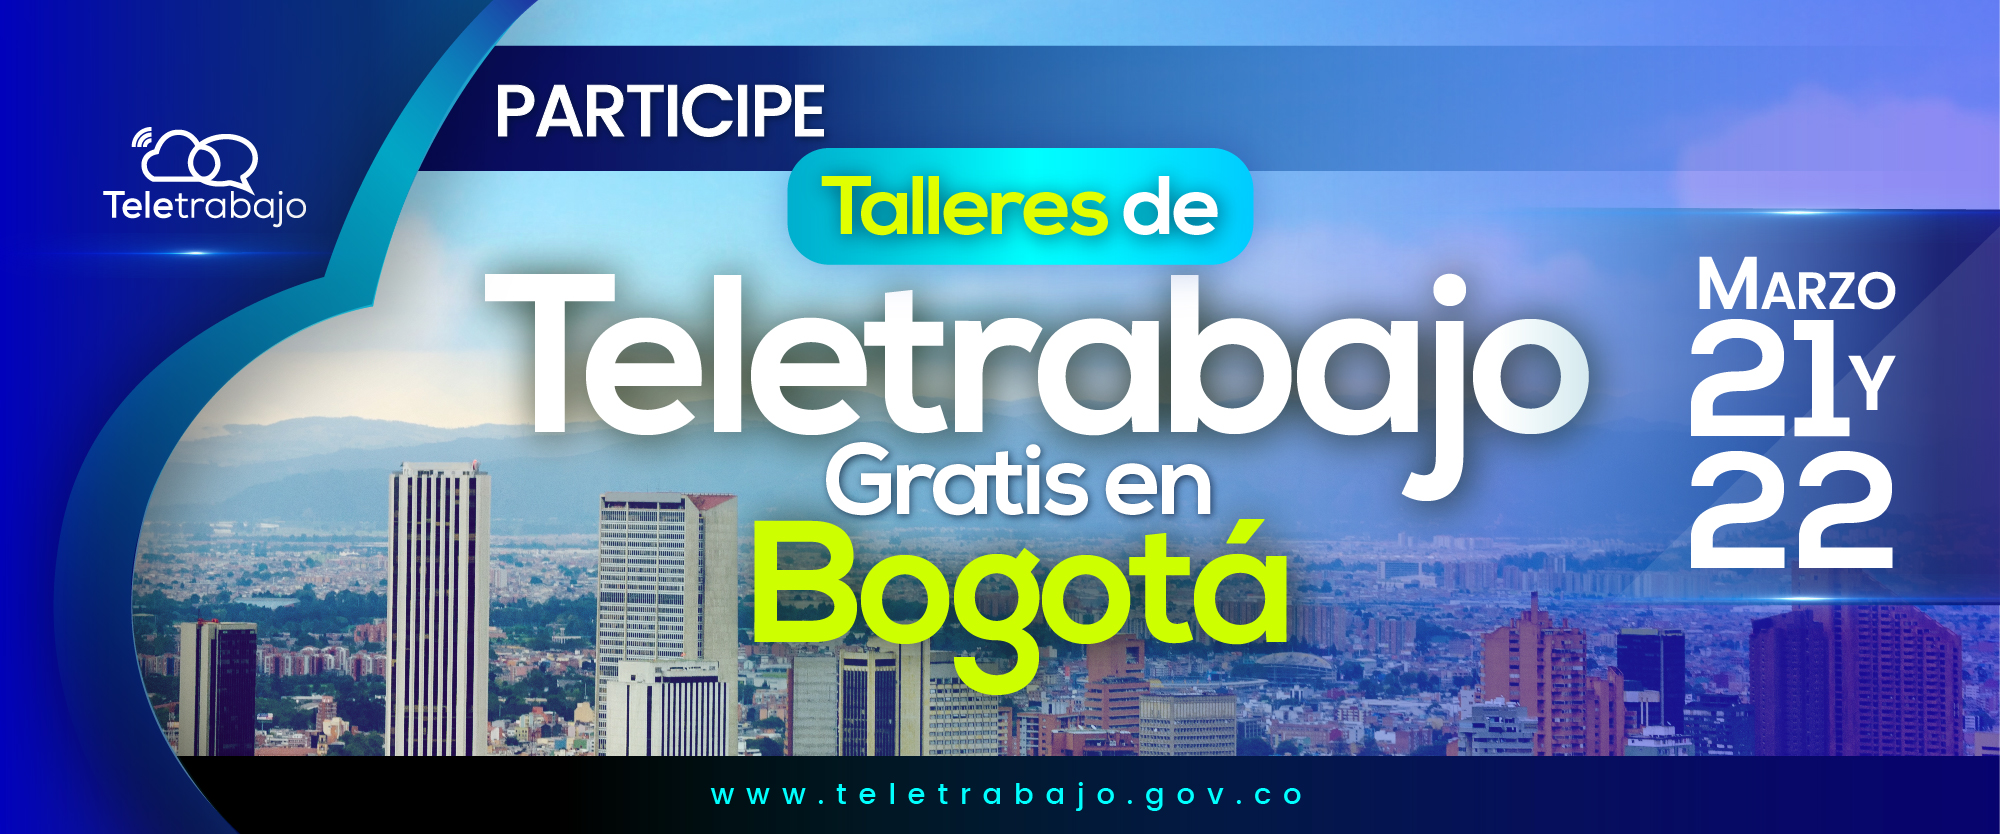 Nuevos talleres de Teletrabajo en Bogotá